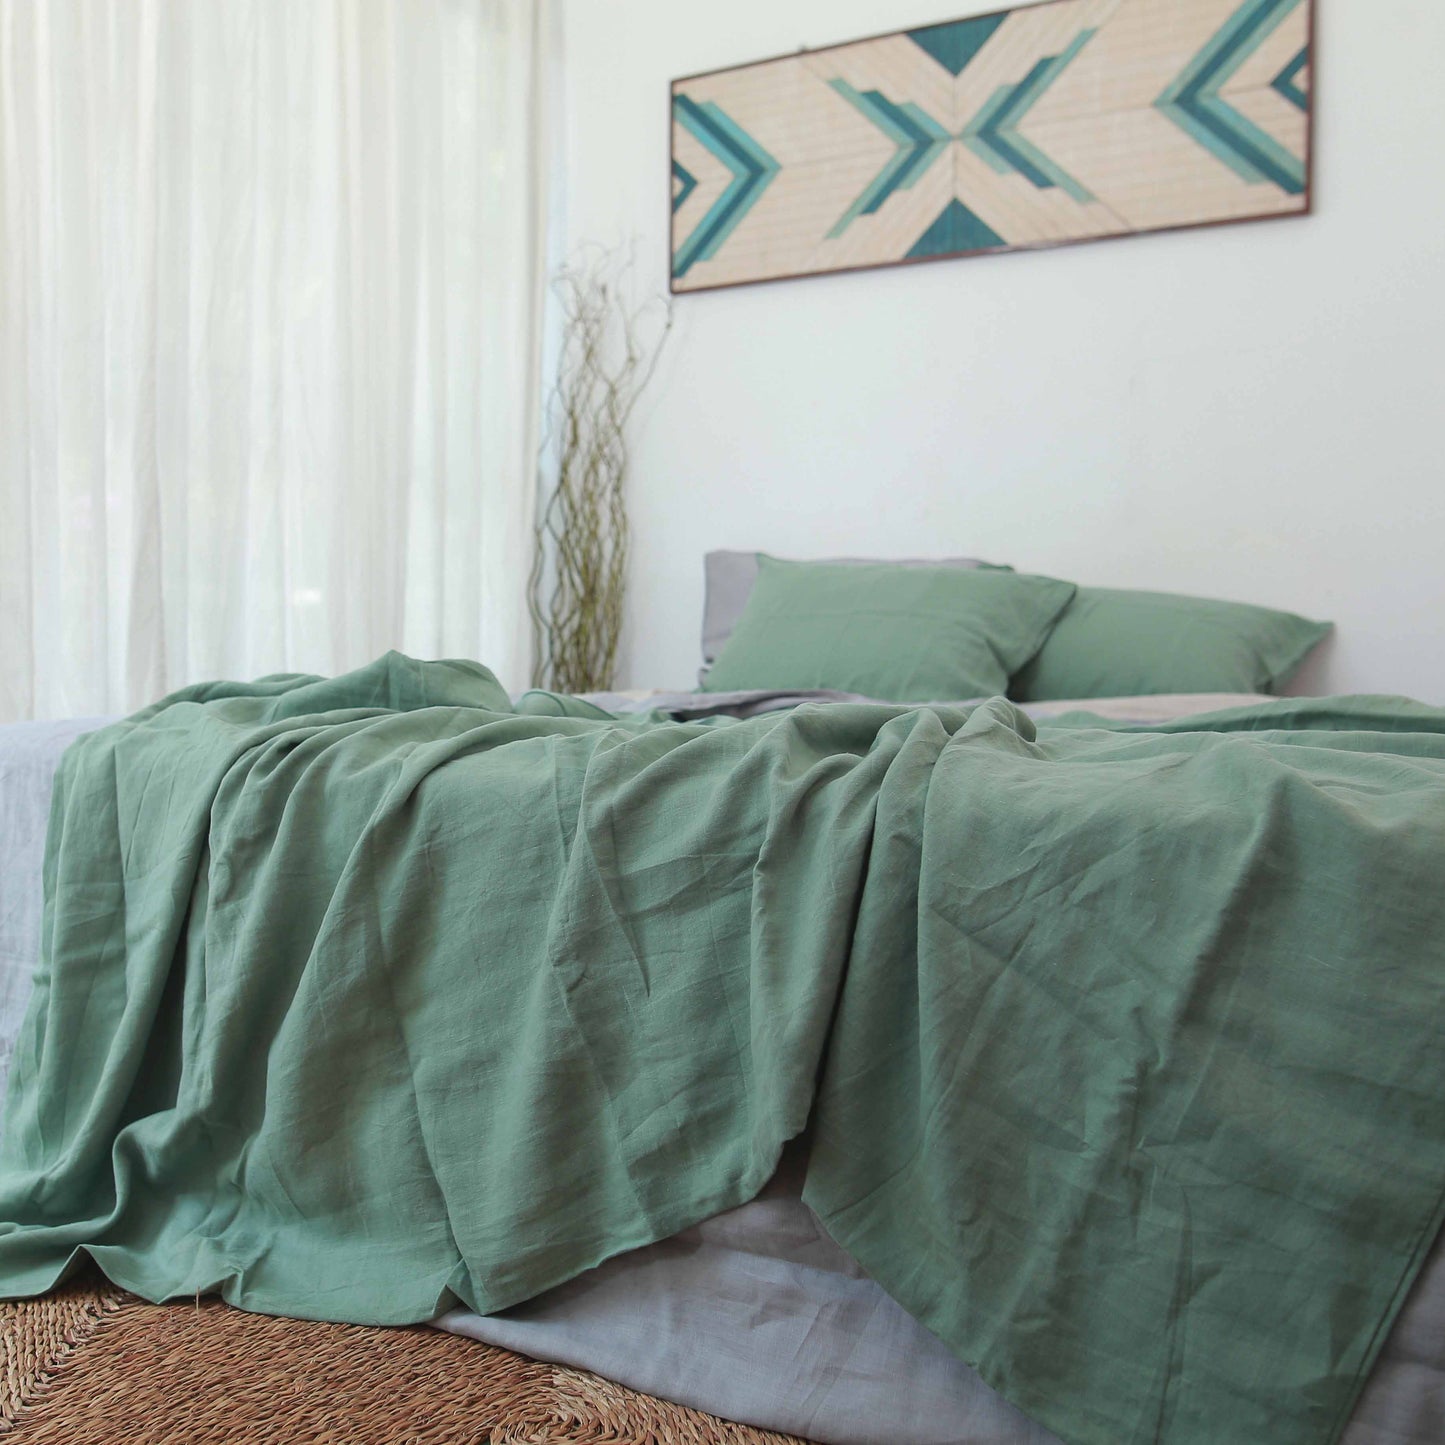 Green French Linen Duvet Cover+2 Pillowcases Set - Plain Dyeing 25